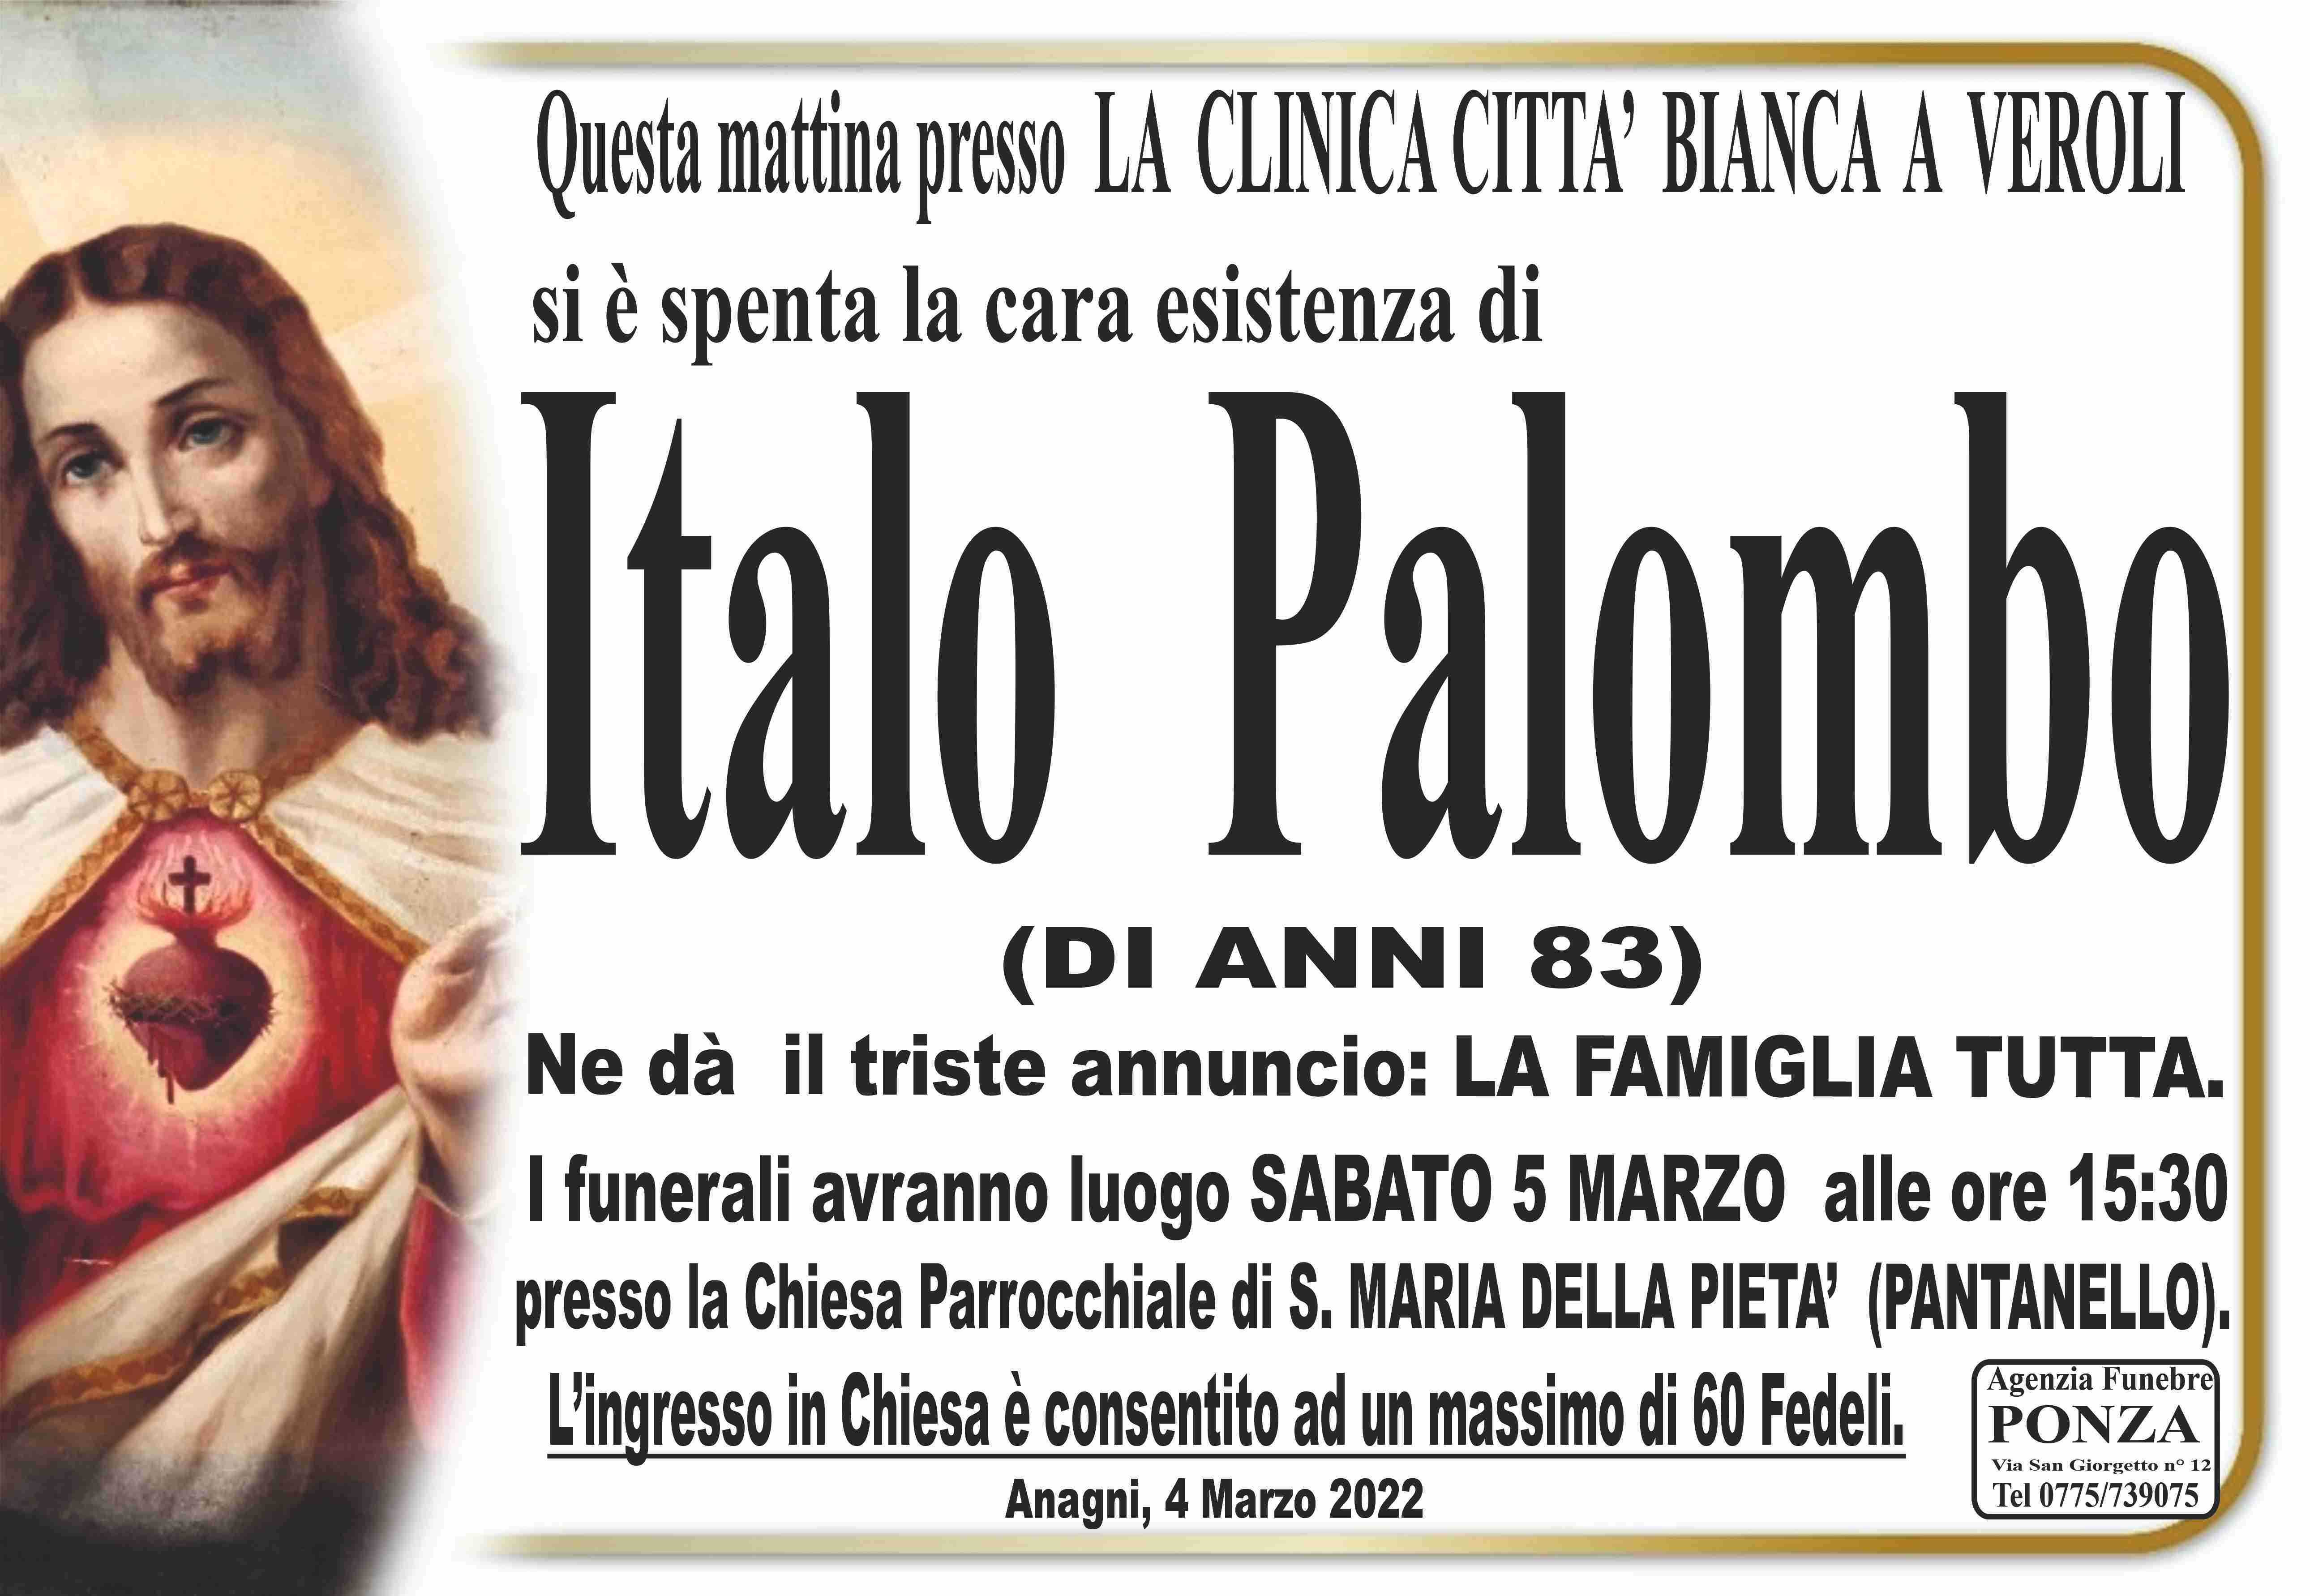 Italo Palombo